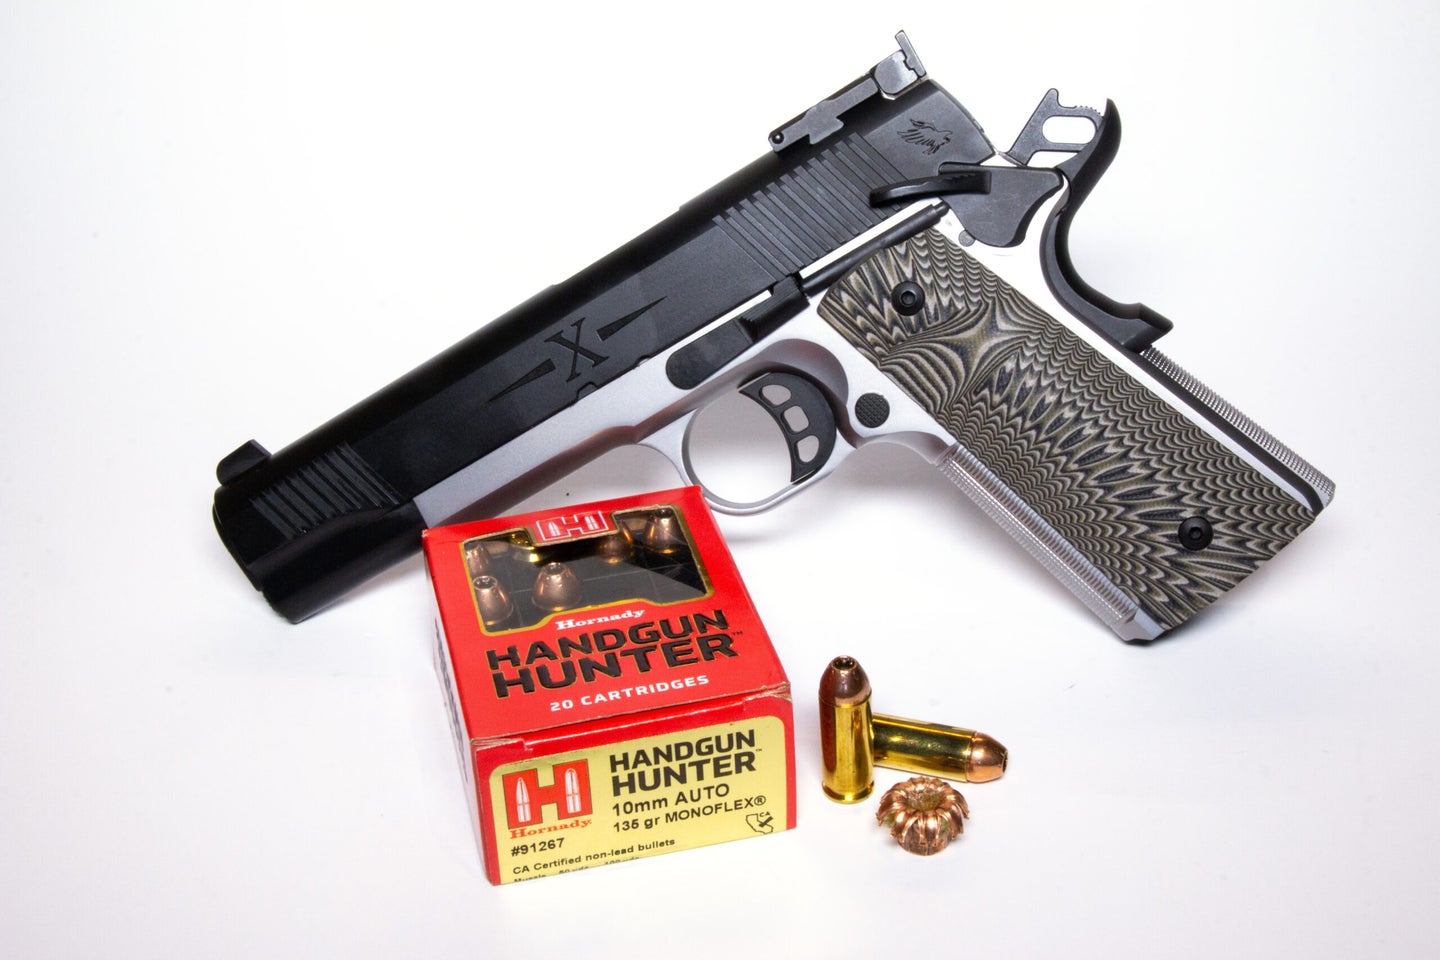 10mm ammo with handgun